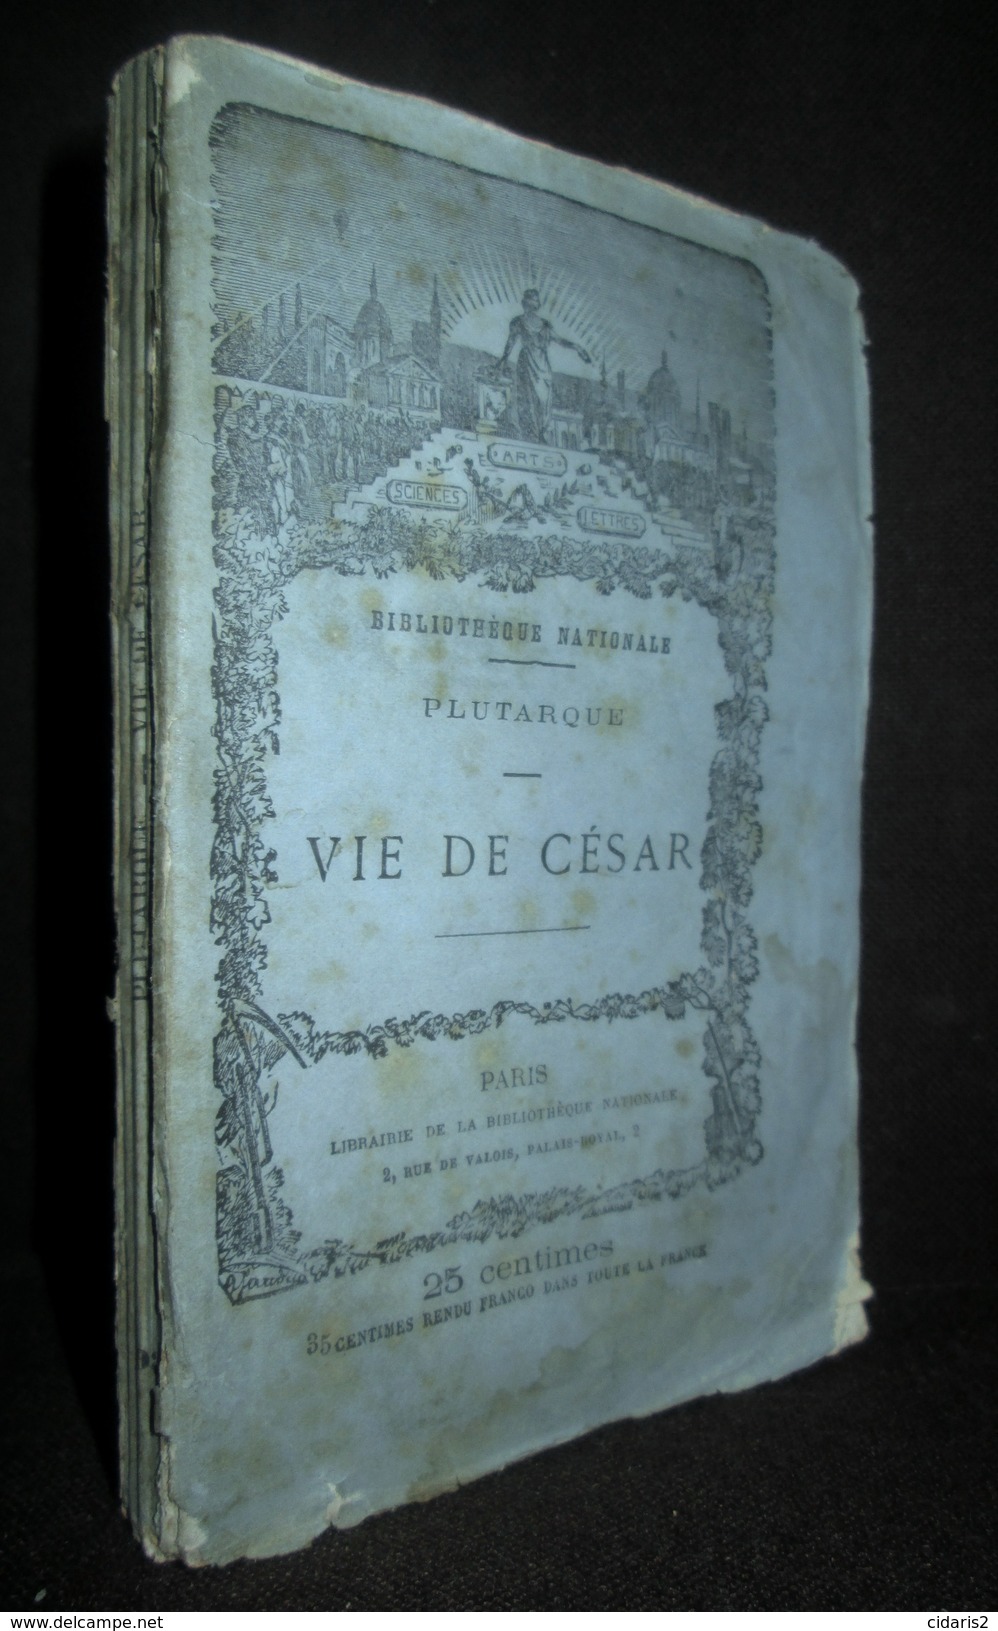 Lot 20 titres Collection "Meilleurs Auteurs Anciens & Modernes" BIBLIOTHEQUE NATIONALE Voltaire... Litterature c1875 !